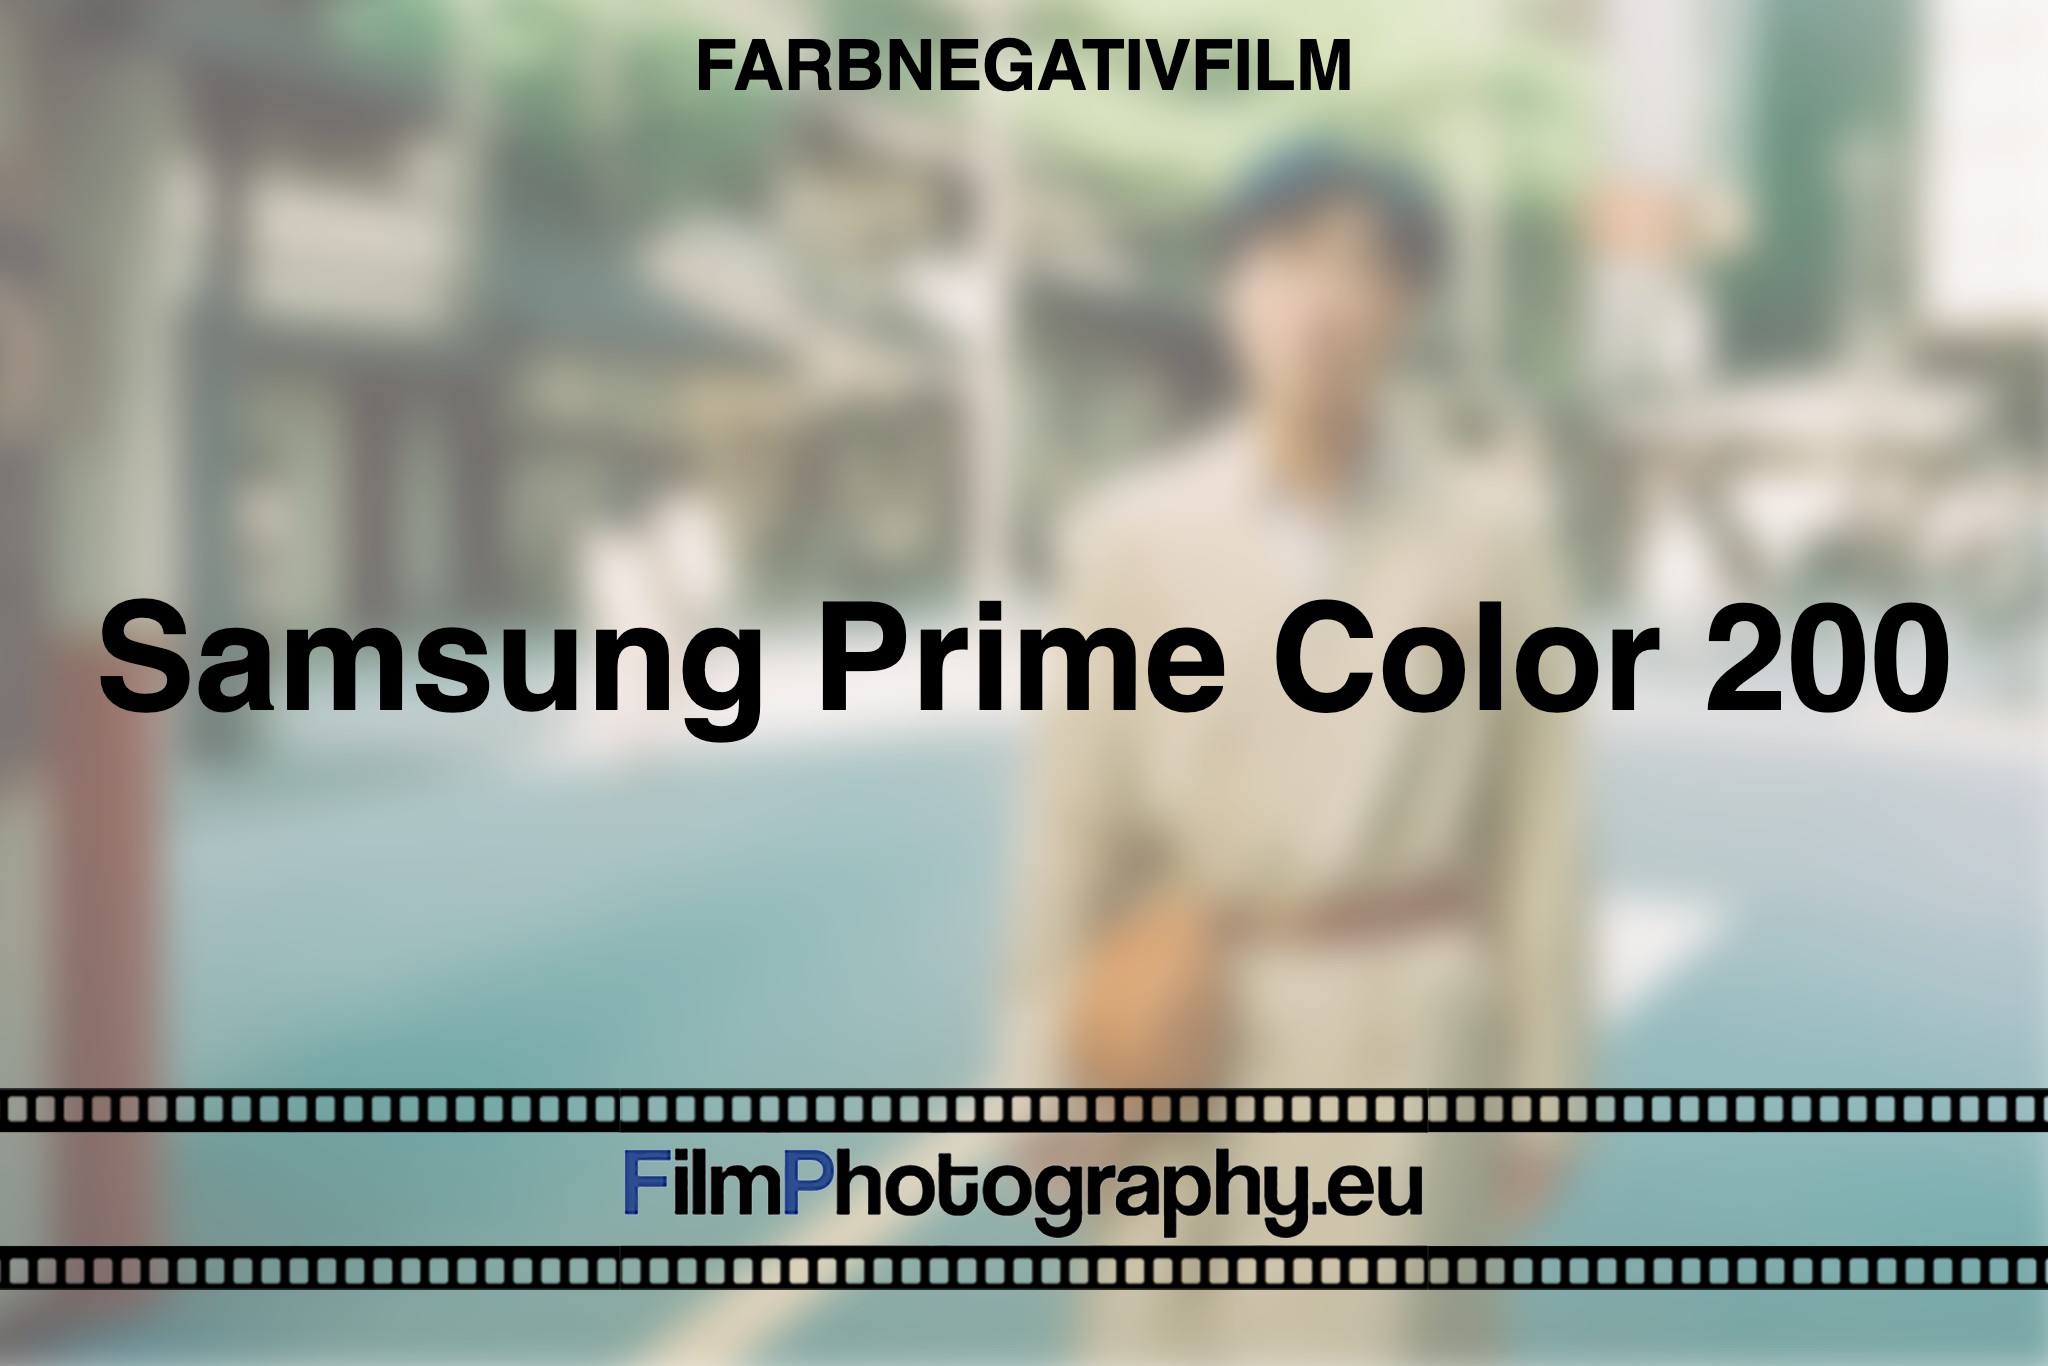 samsung-prime-color-200-farbnegativfilm-bnv